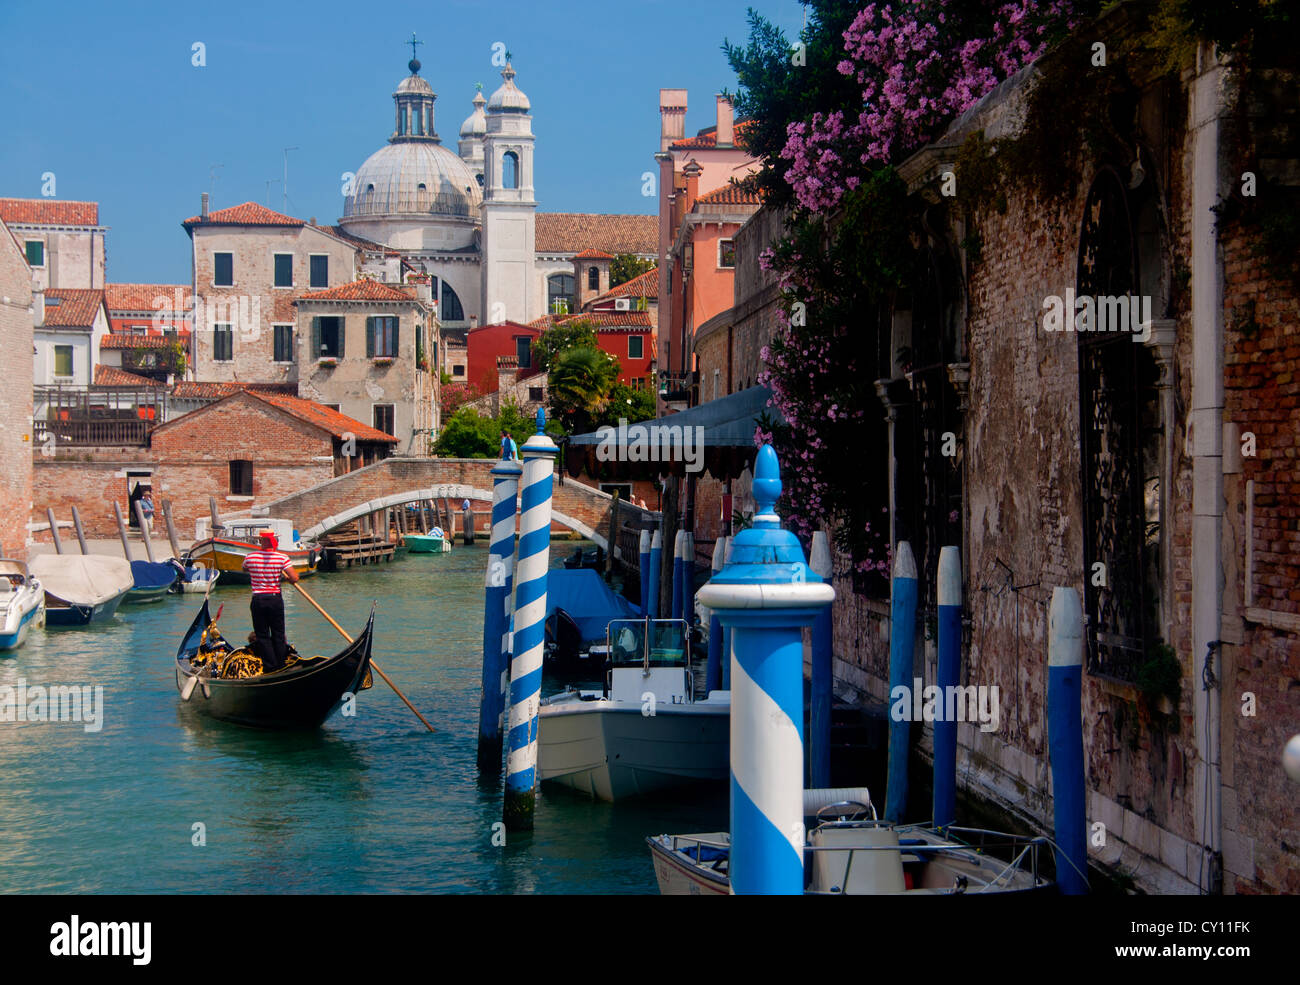 Gondola on Rio degli Ognissanti Canal with Gesuiti Church in background Dorsoduro sestier Venice Veneto Italy Stock Photo